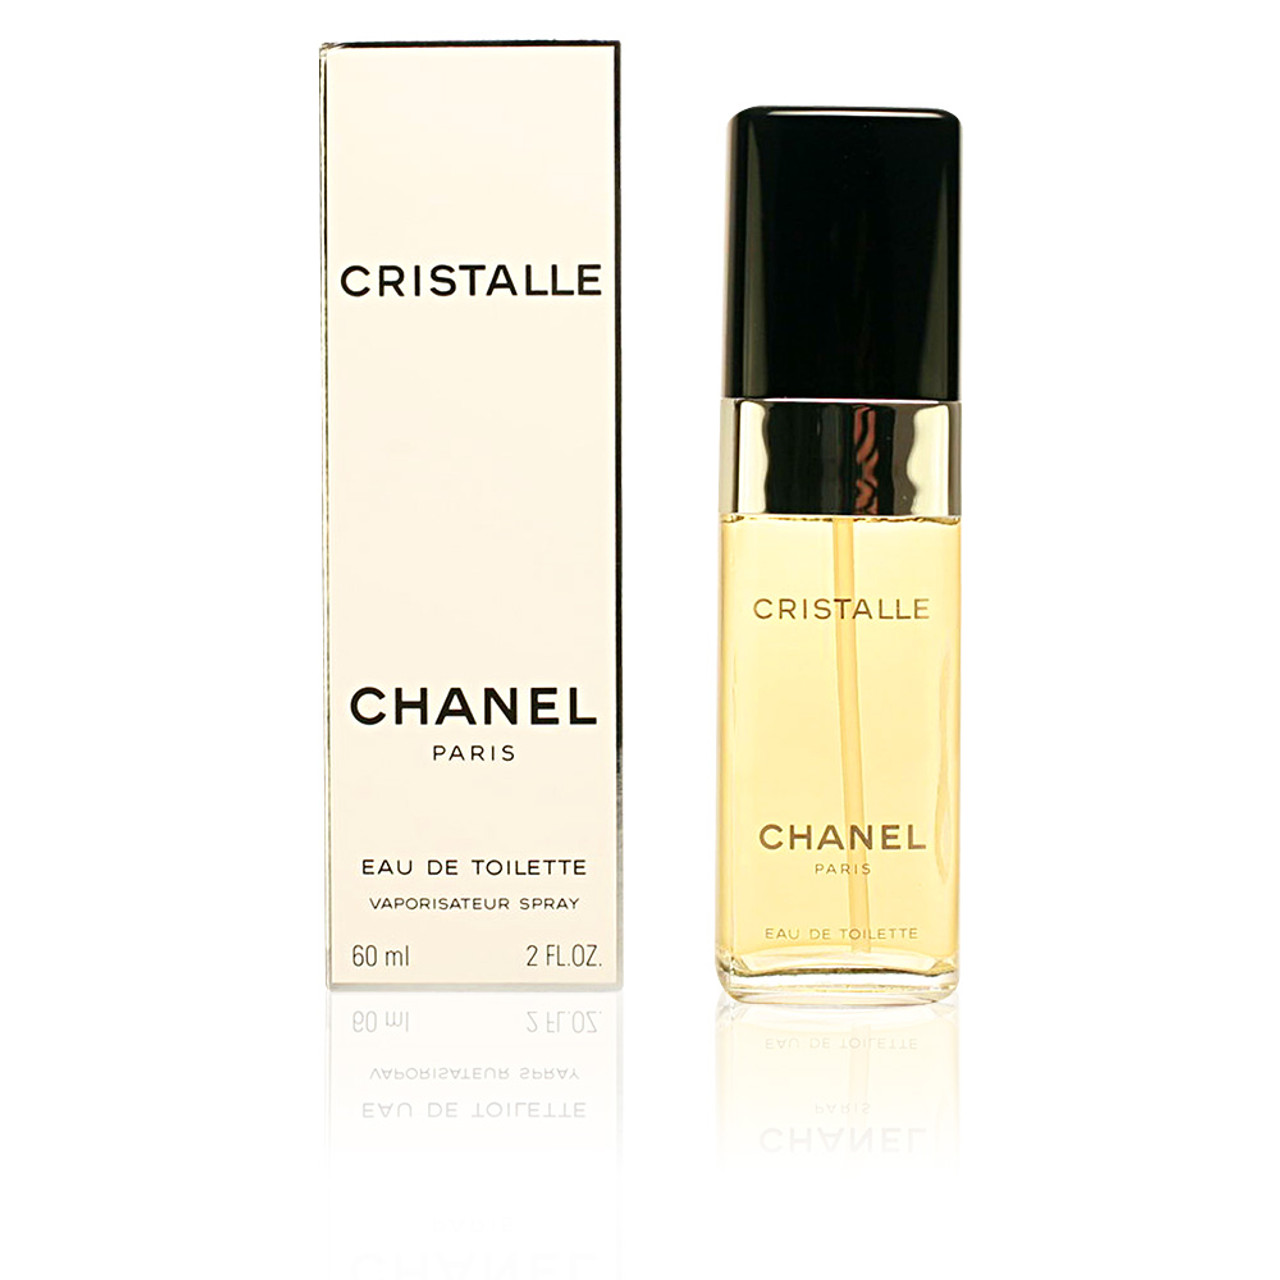 CHANEL Cristalle 3.4oz Women's Eau de Parfum for sale online